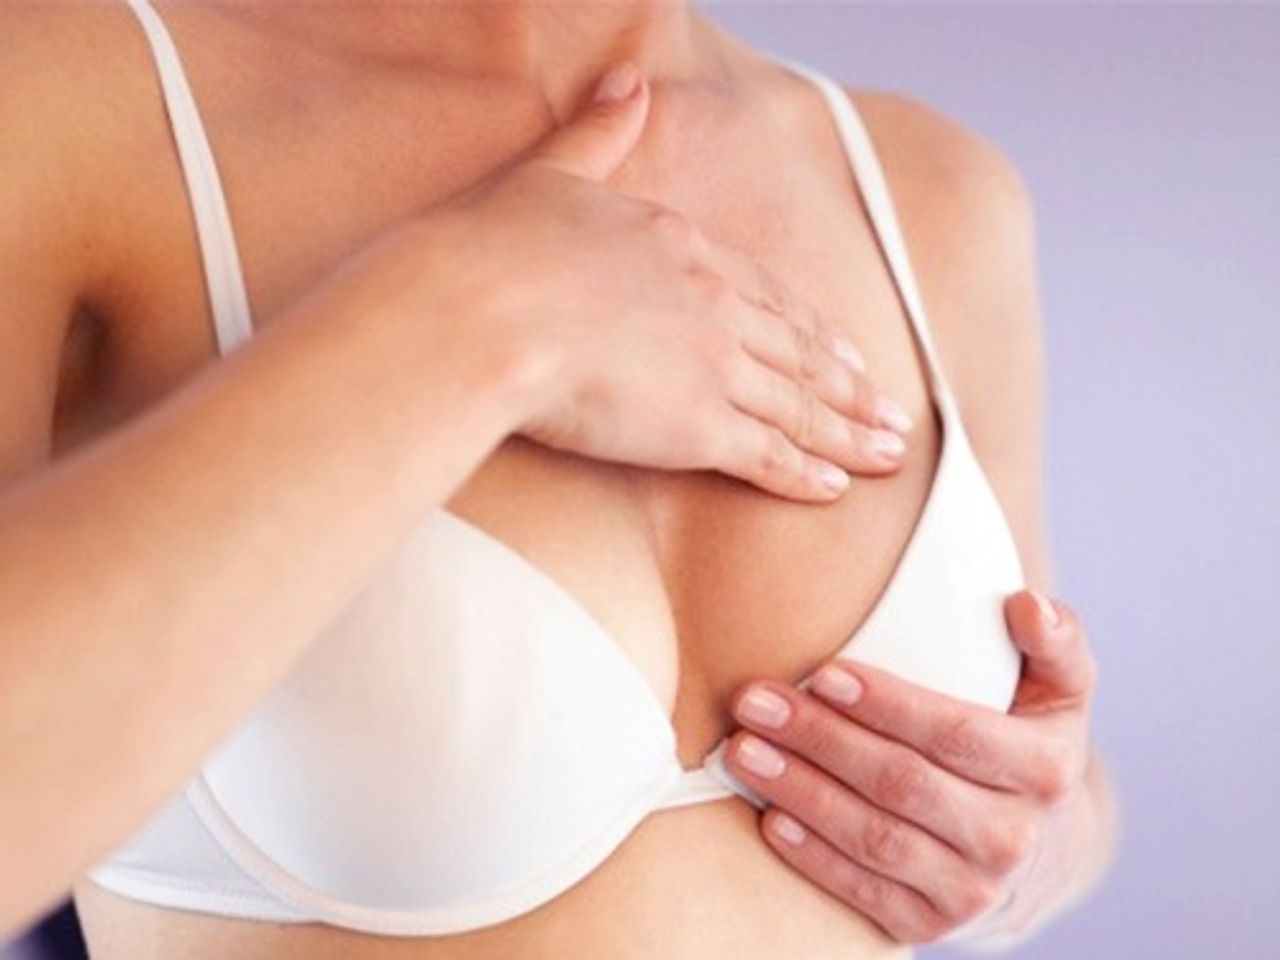 Kem săn chắc ngực Bust Cream Palmer's 125g giúp làm săn chắc và cải thiện độ đàn hồi của vùng da quanh ngực